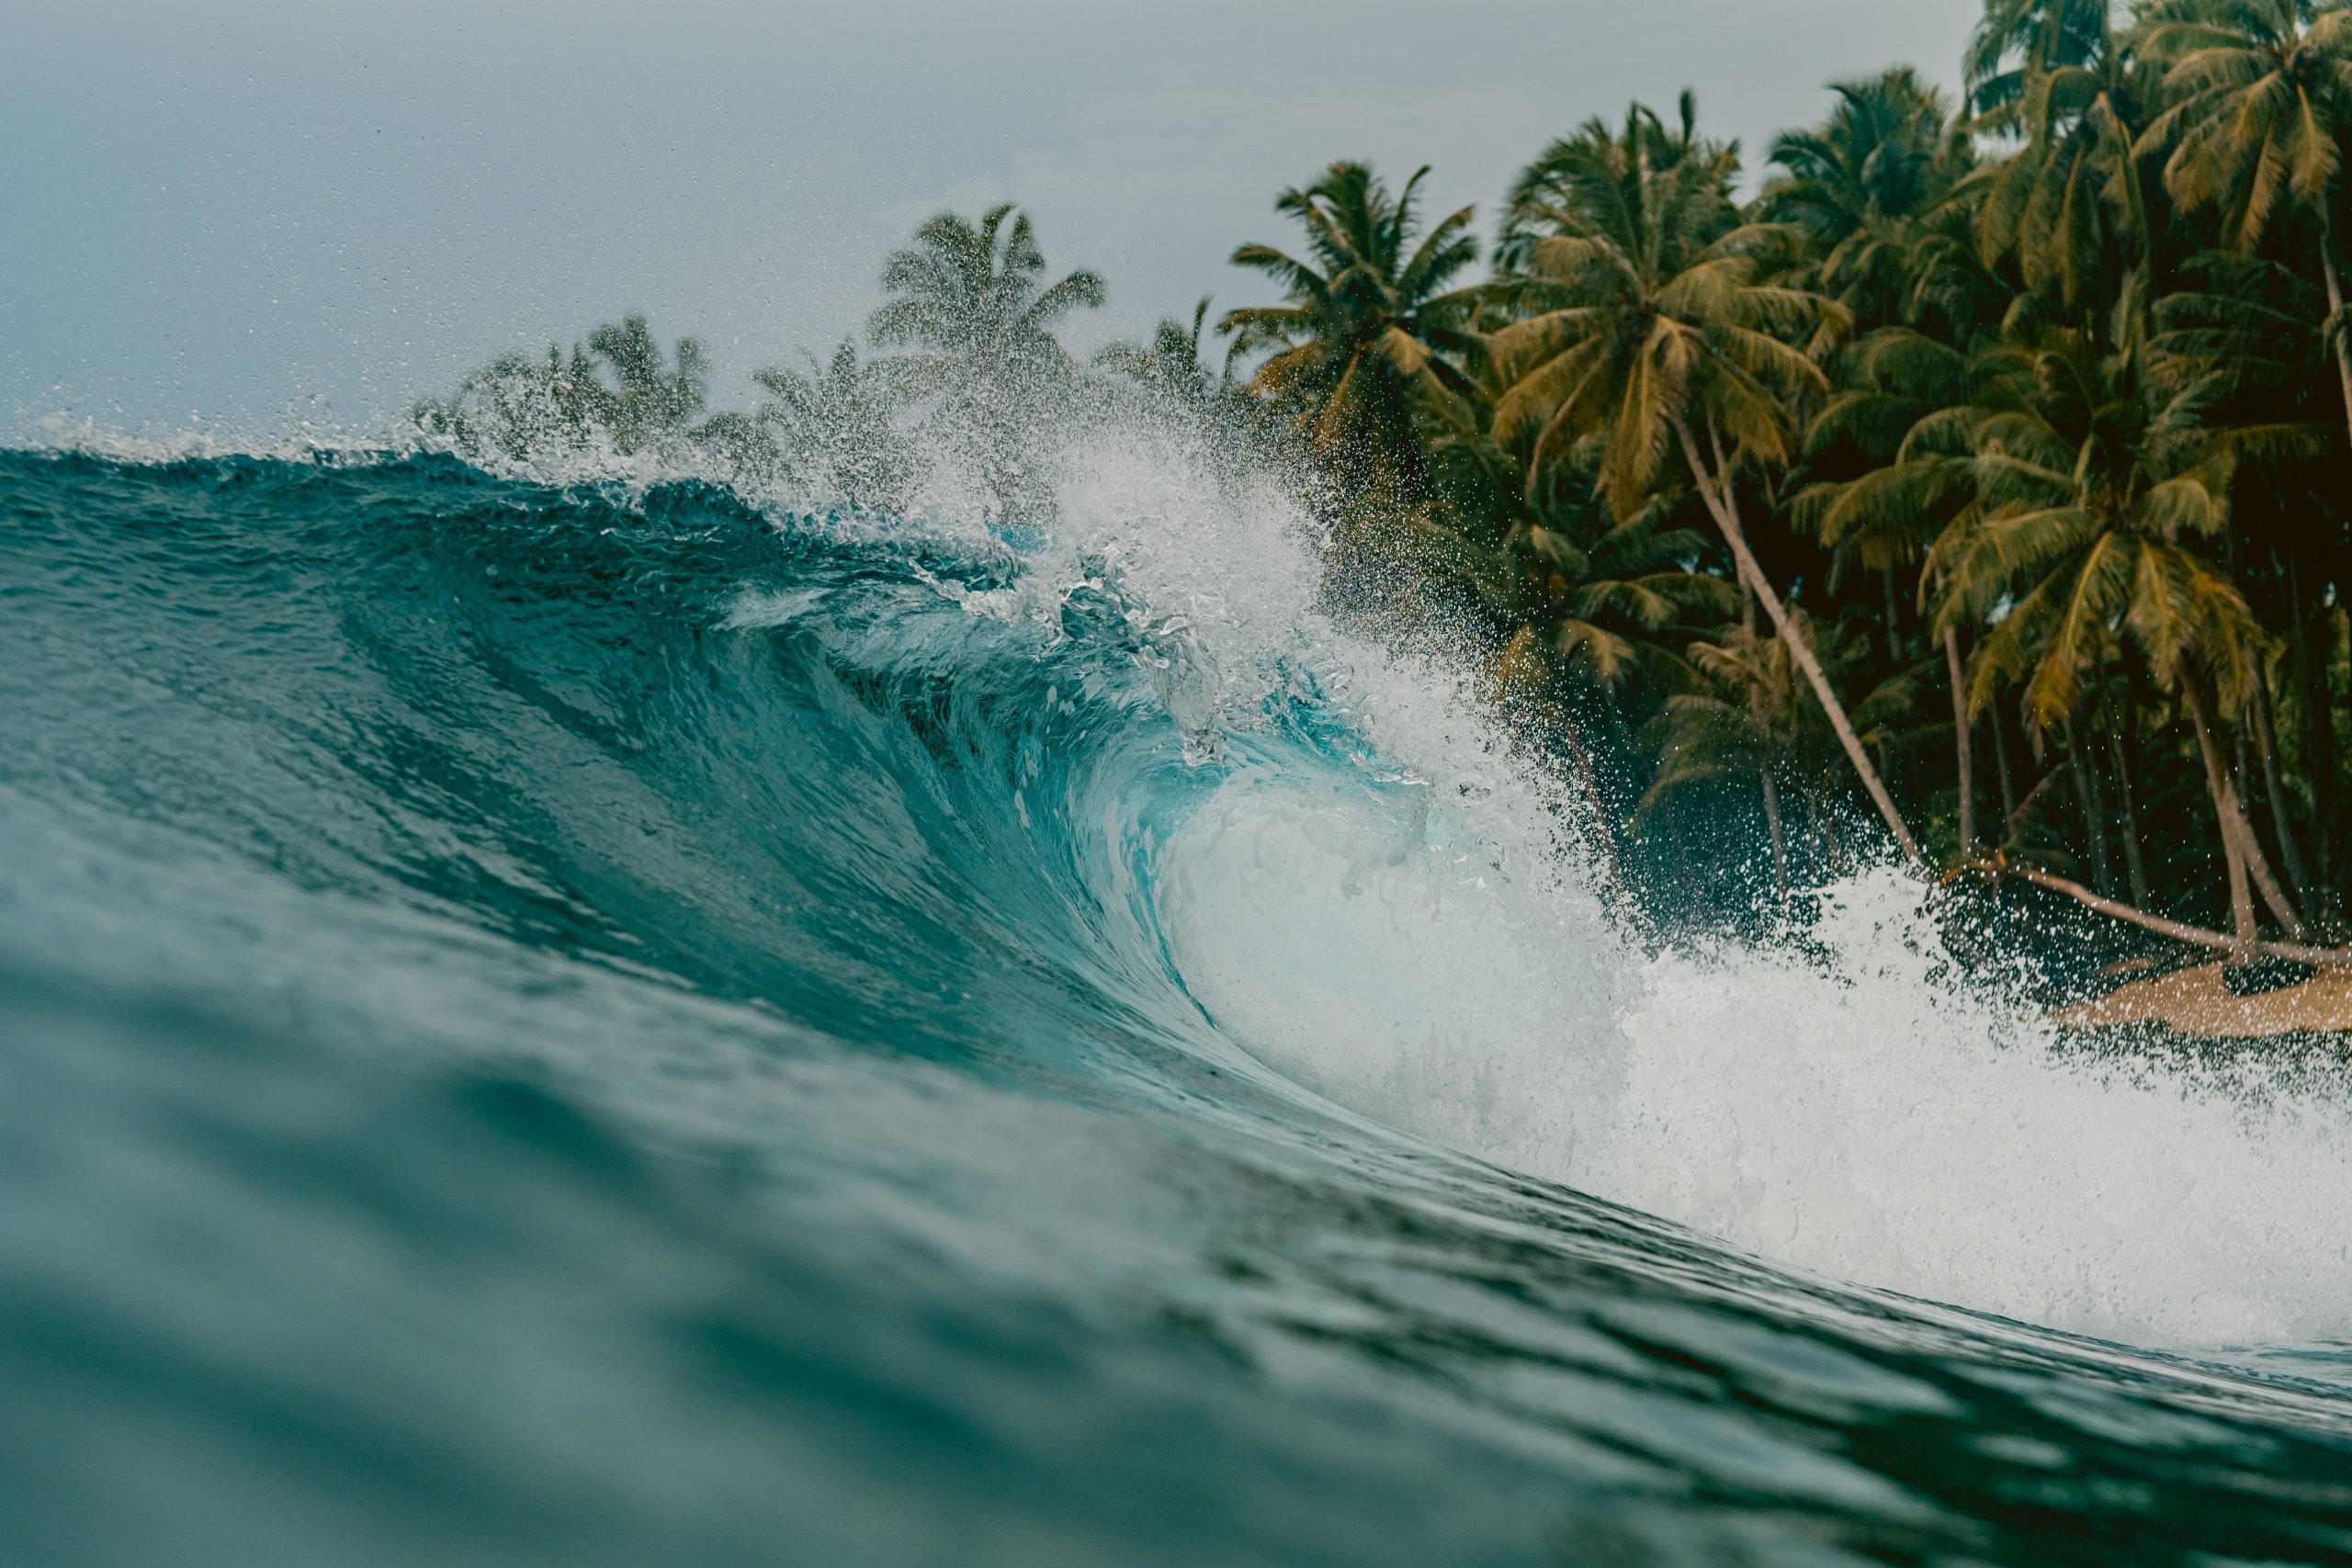 Die Innenansicht der riesigen brechenden Welle des Meeres in Mentawai Inseln, Indonesien